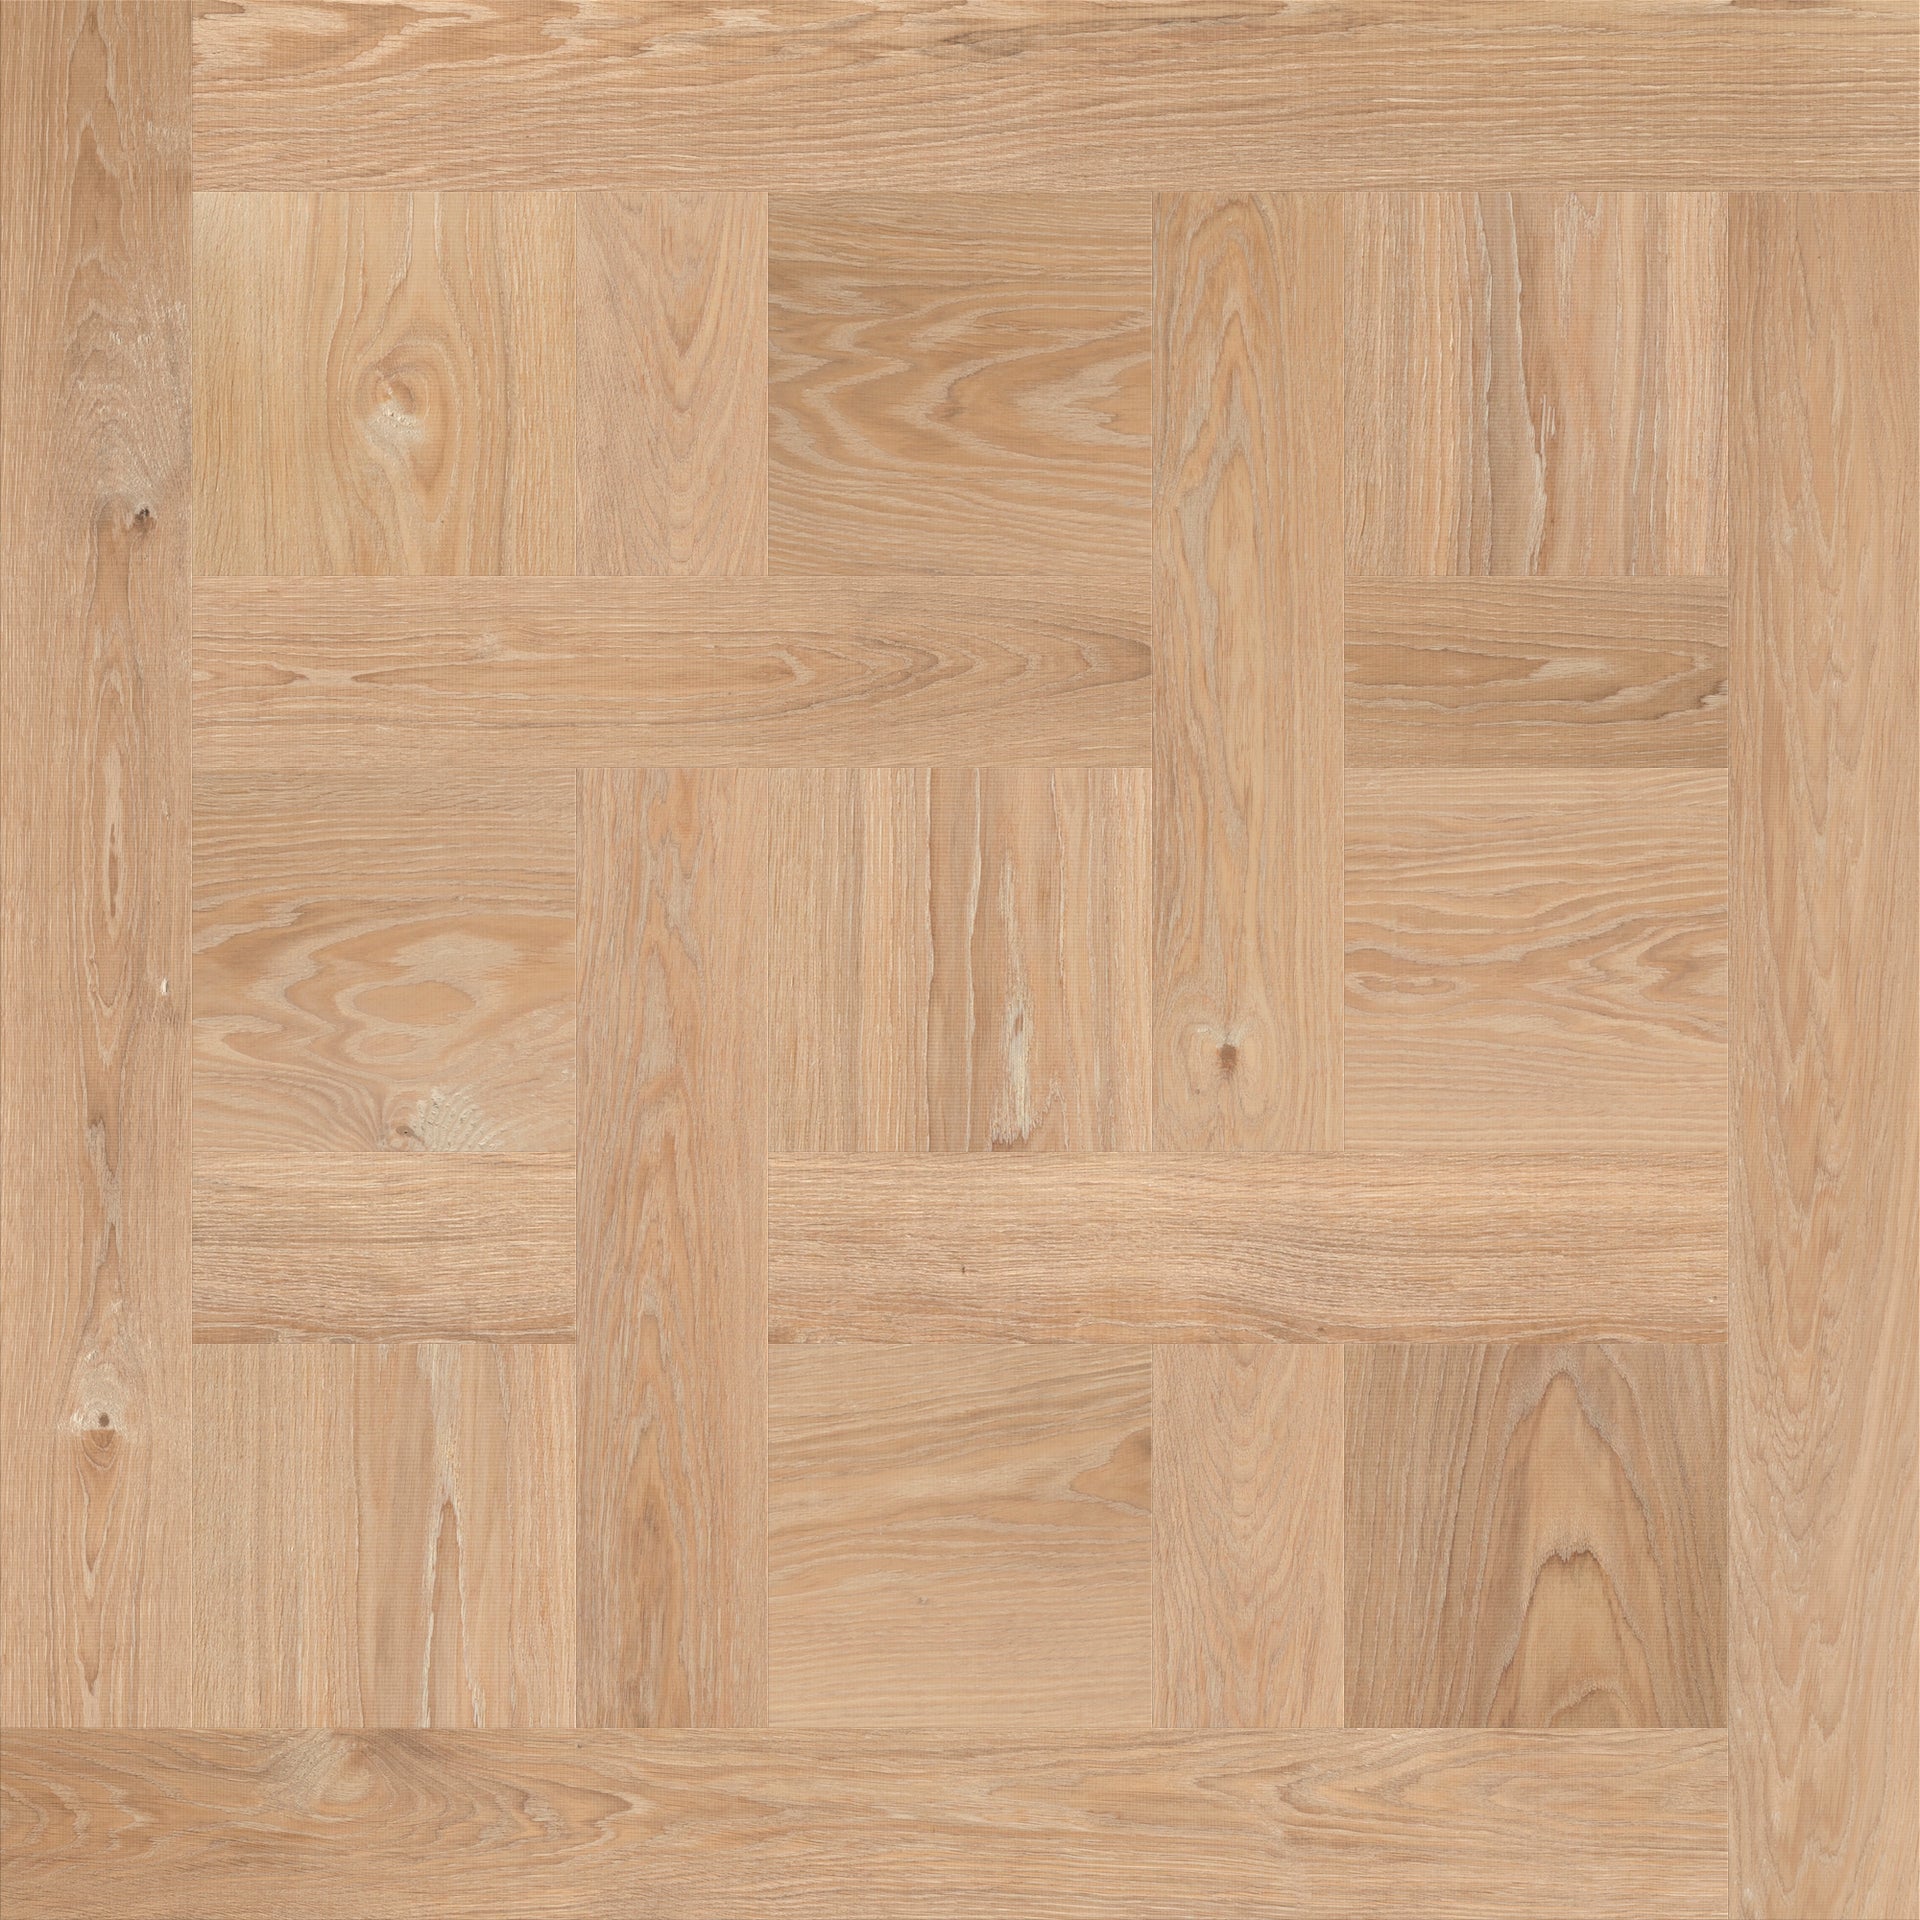 Chantilly patroon houten vloeren paneel